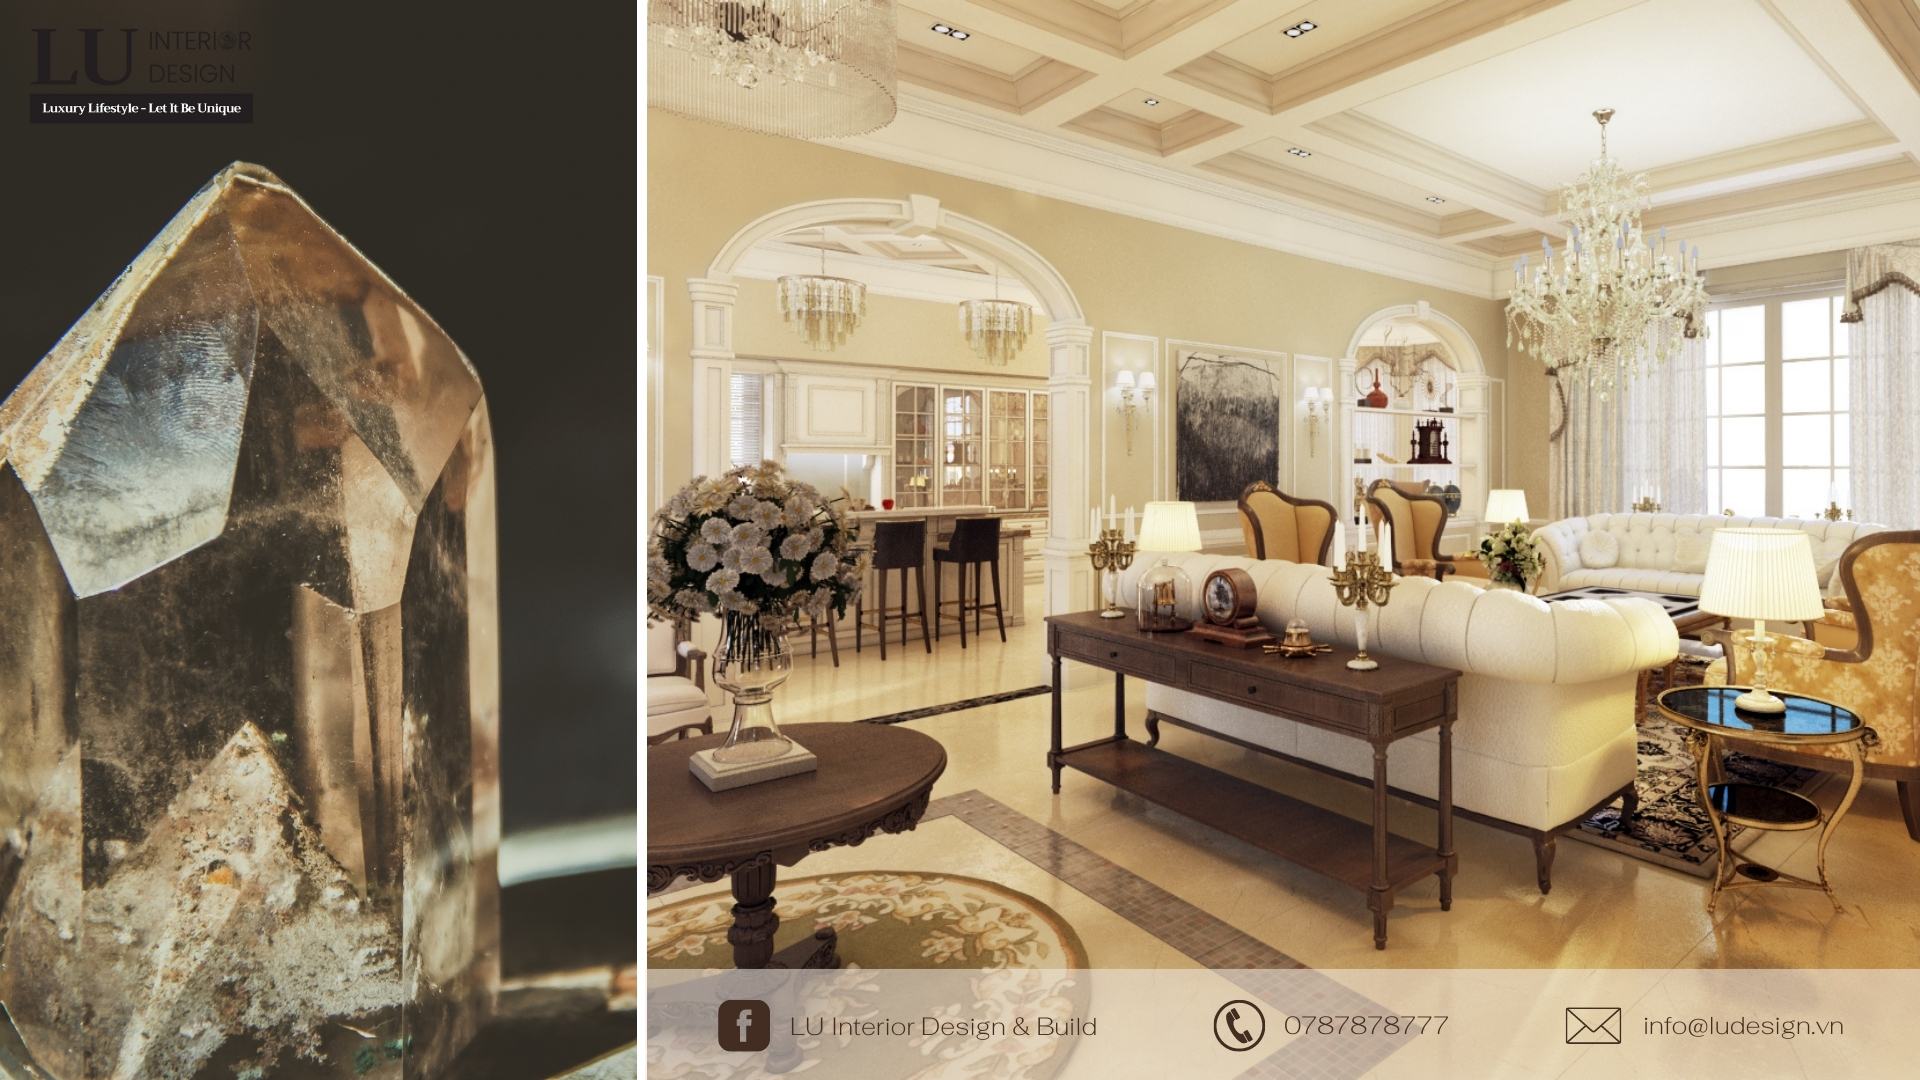 Đèn chùm pha lê - nét đặc trưng của thiết kế đậm chất cổ điển | Dự án Villa Chateau Phú Mỹ Hưng - LU Design thực hiện.